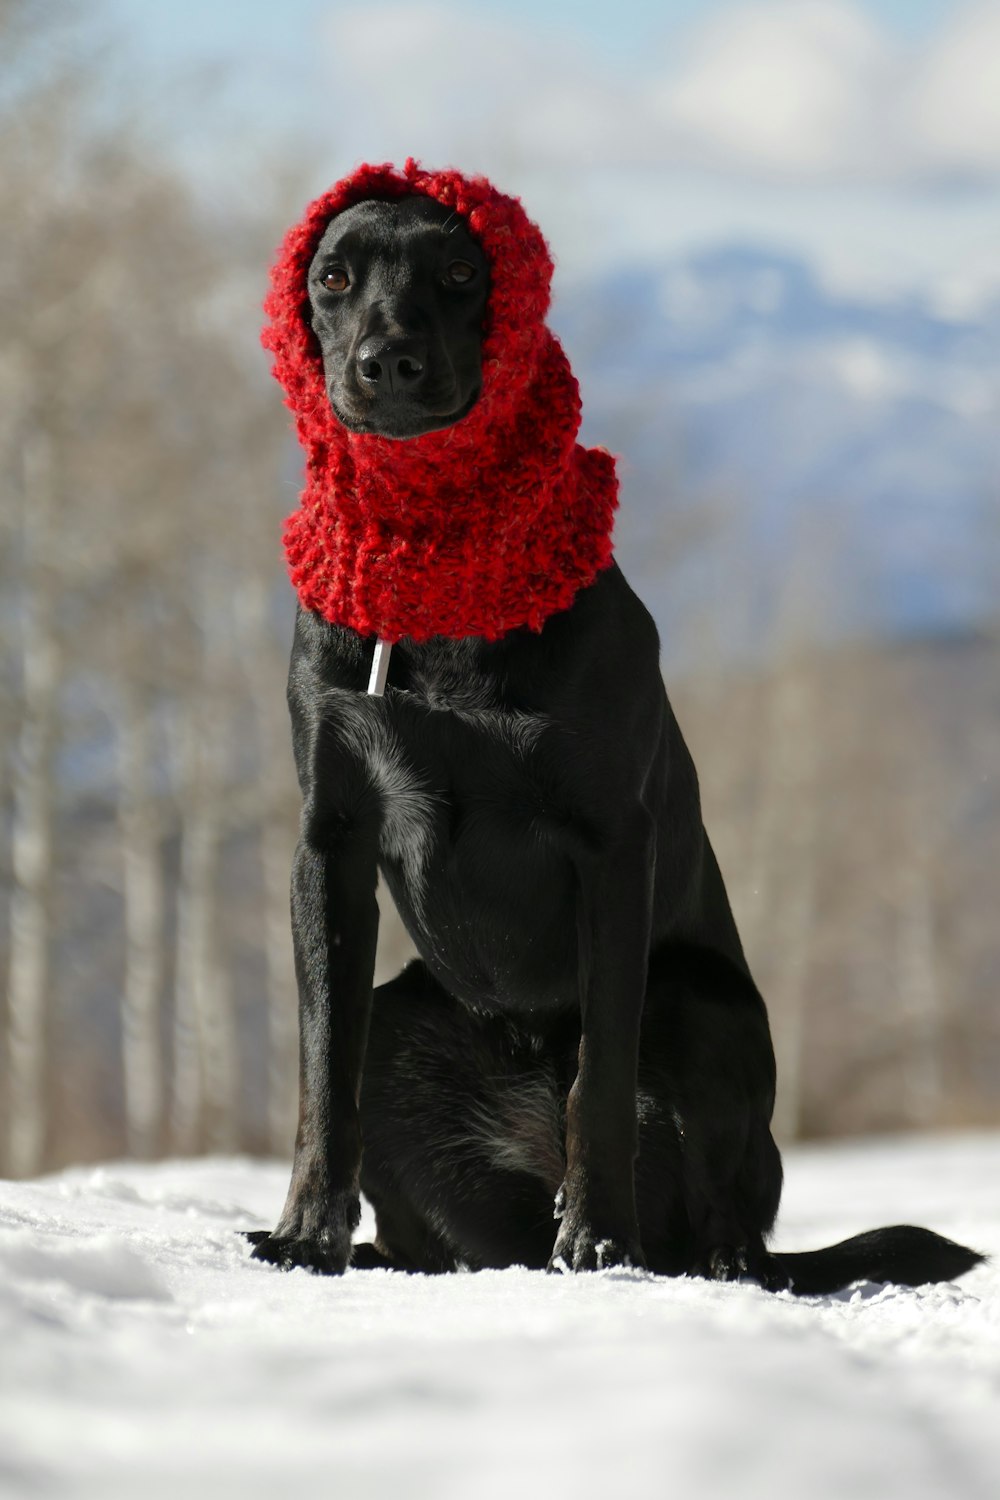 ビーニー帽をかぶった雪の上に座っている黒い犬